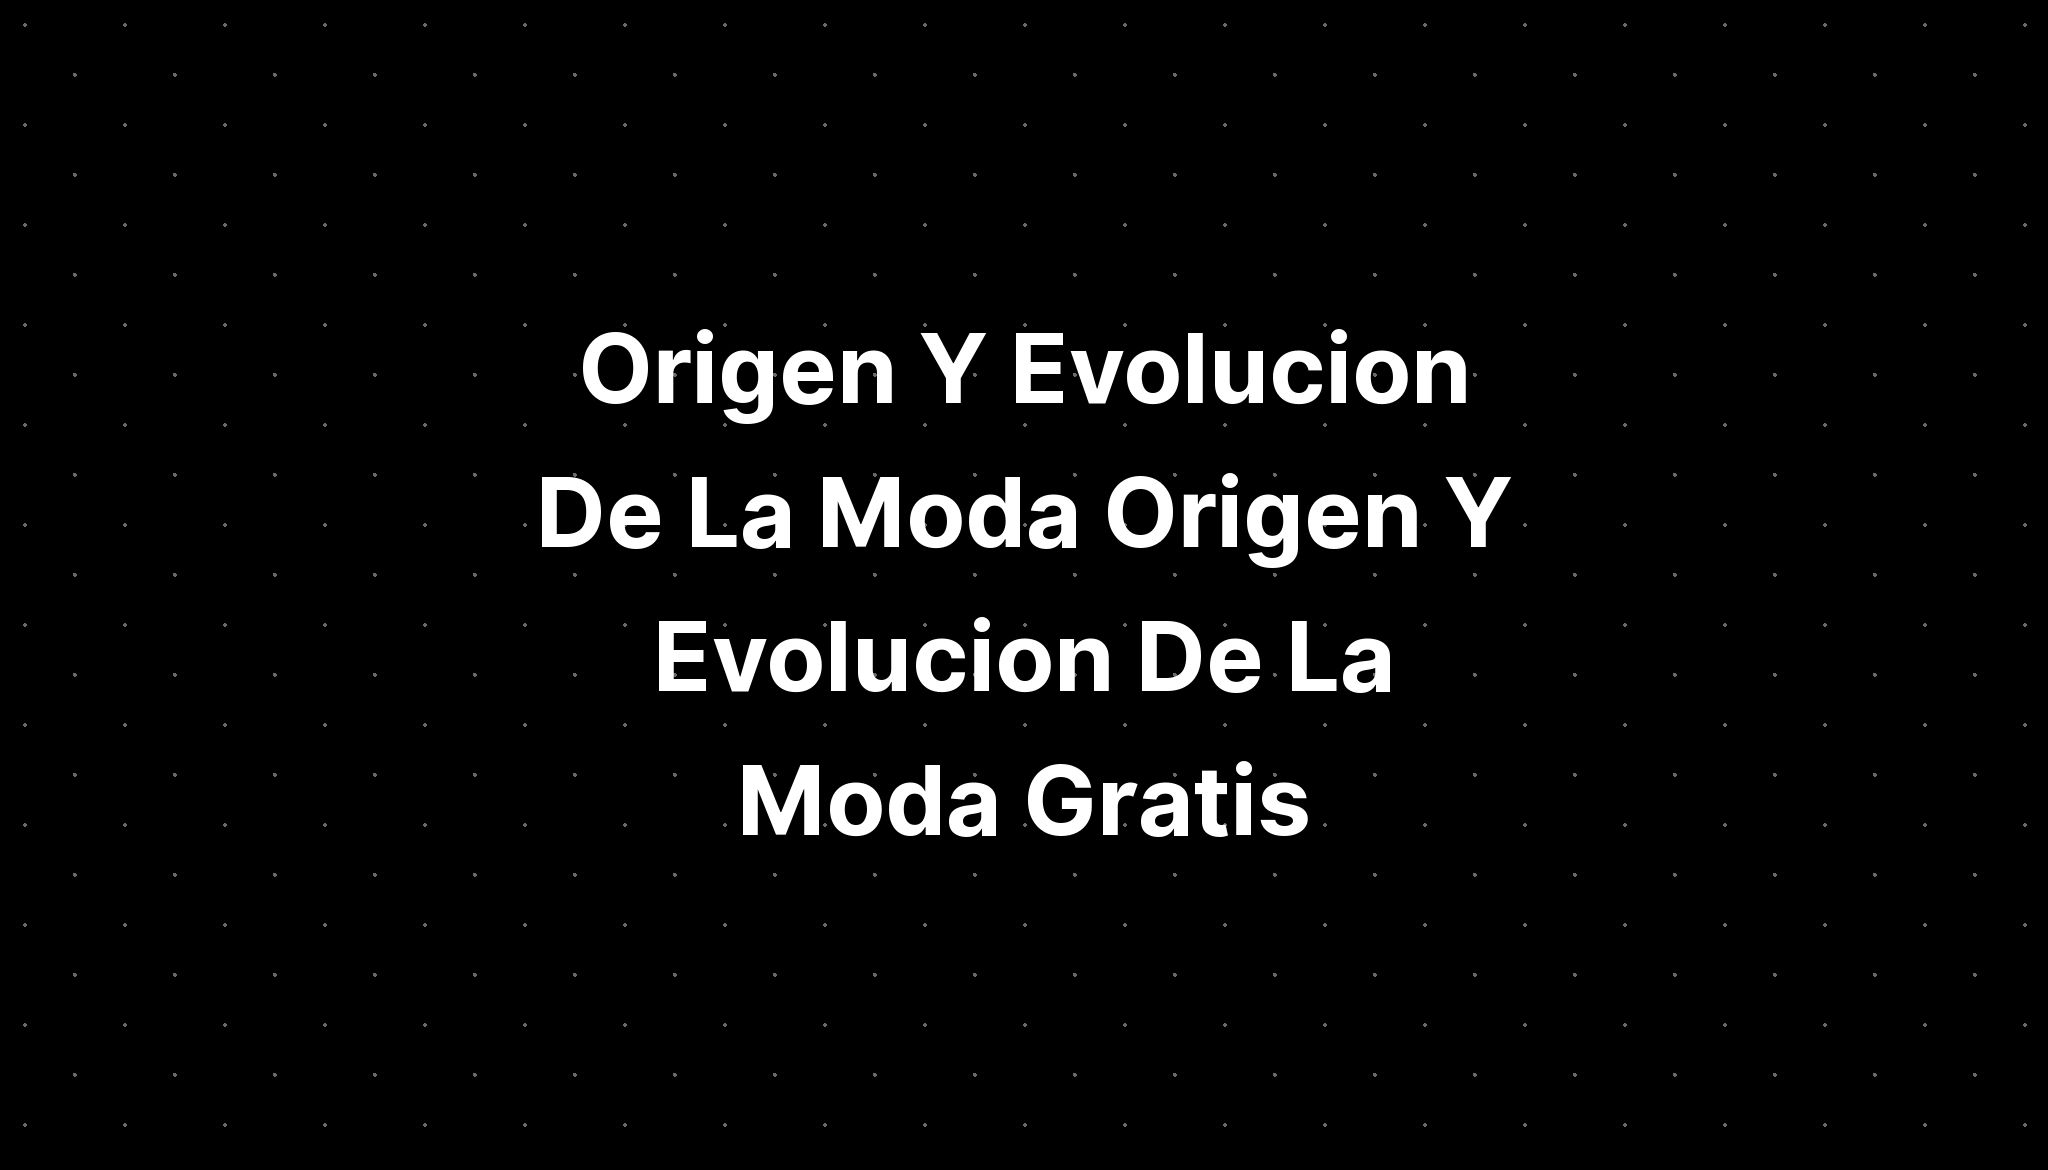 Origen Y Evolucion De La Moda Origen Y Evolucion De La Moda Gratis My